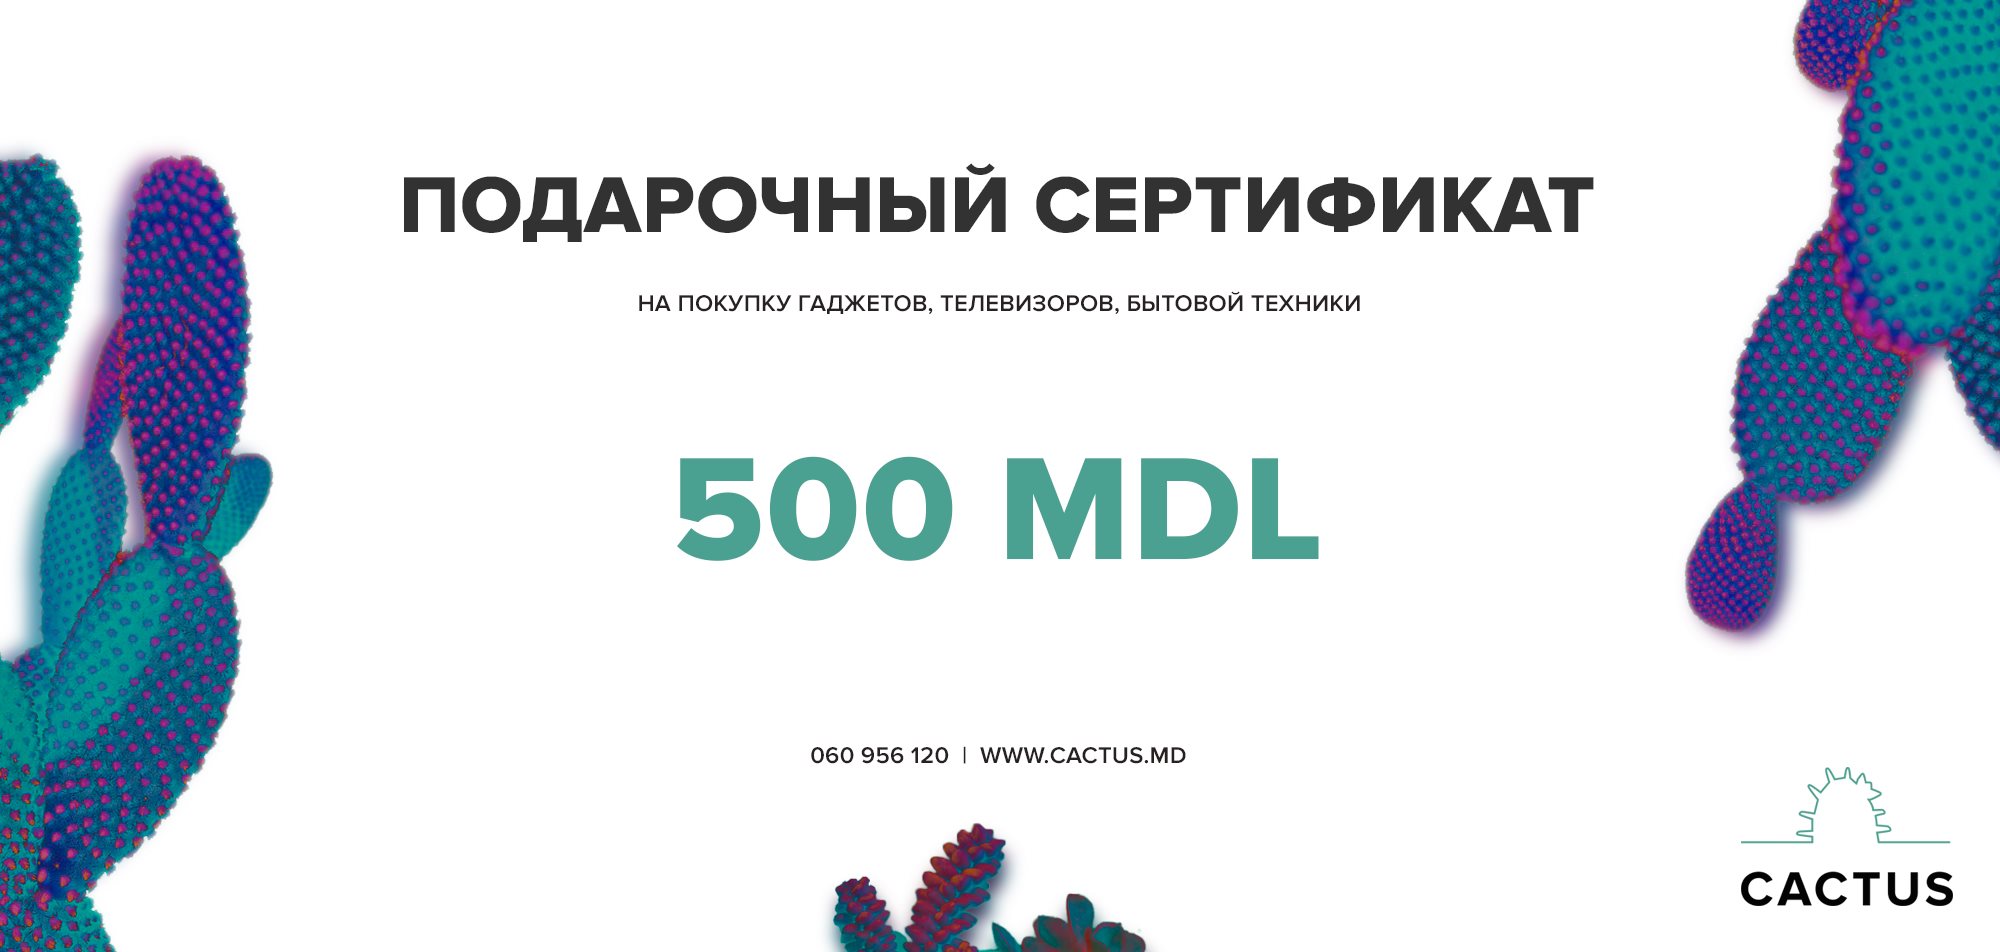 Certificat de cadou - 500 mdl